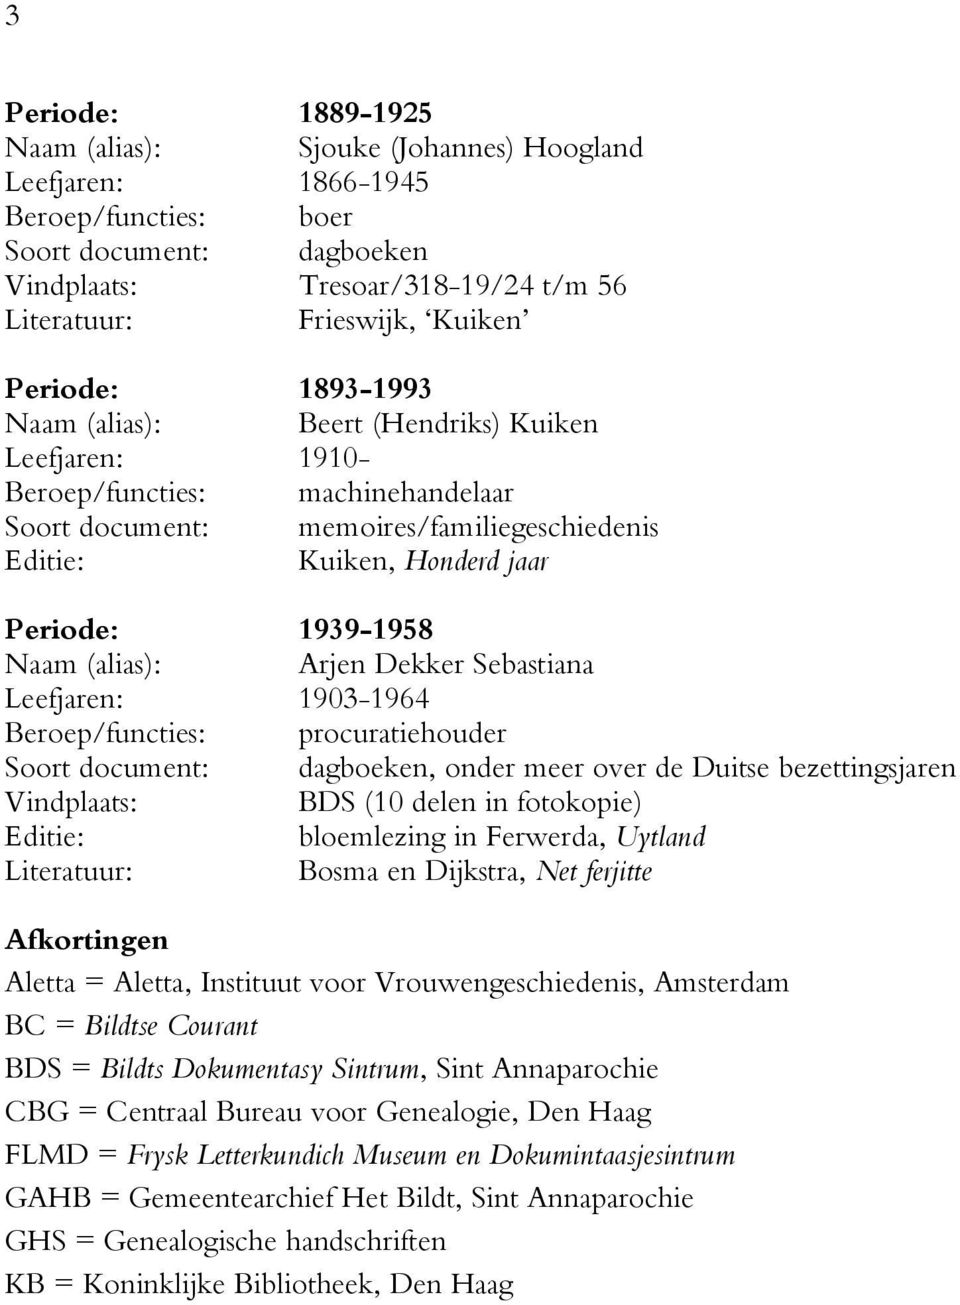 1939-1958 Naam (alias): Arjen Dekker Sebastiana Leefjaren: 1903-1964 Beroep/functies: procuratiehouder Soort document: dagboeken, onder meer over de Duitse bezettingsjaren Vindplaats: BDS (10 delen